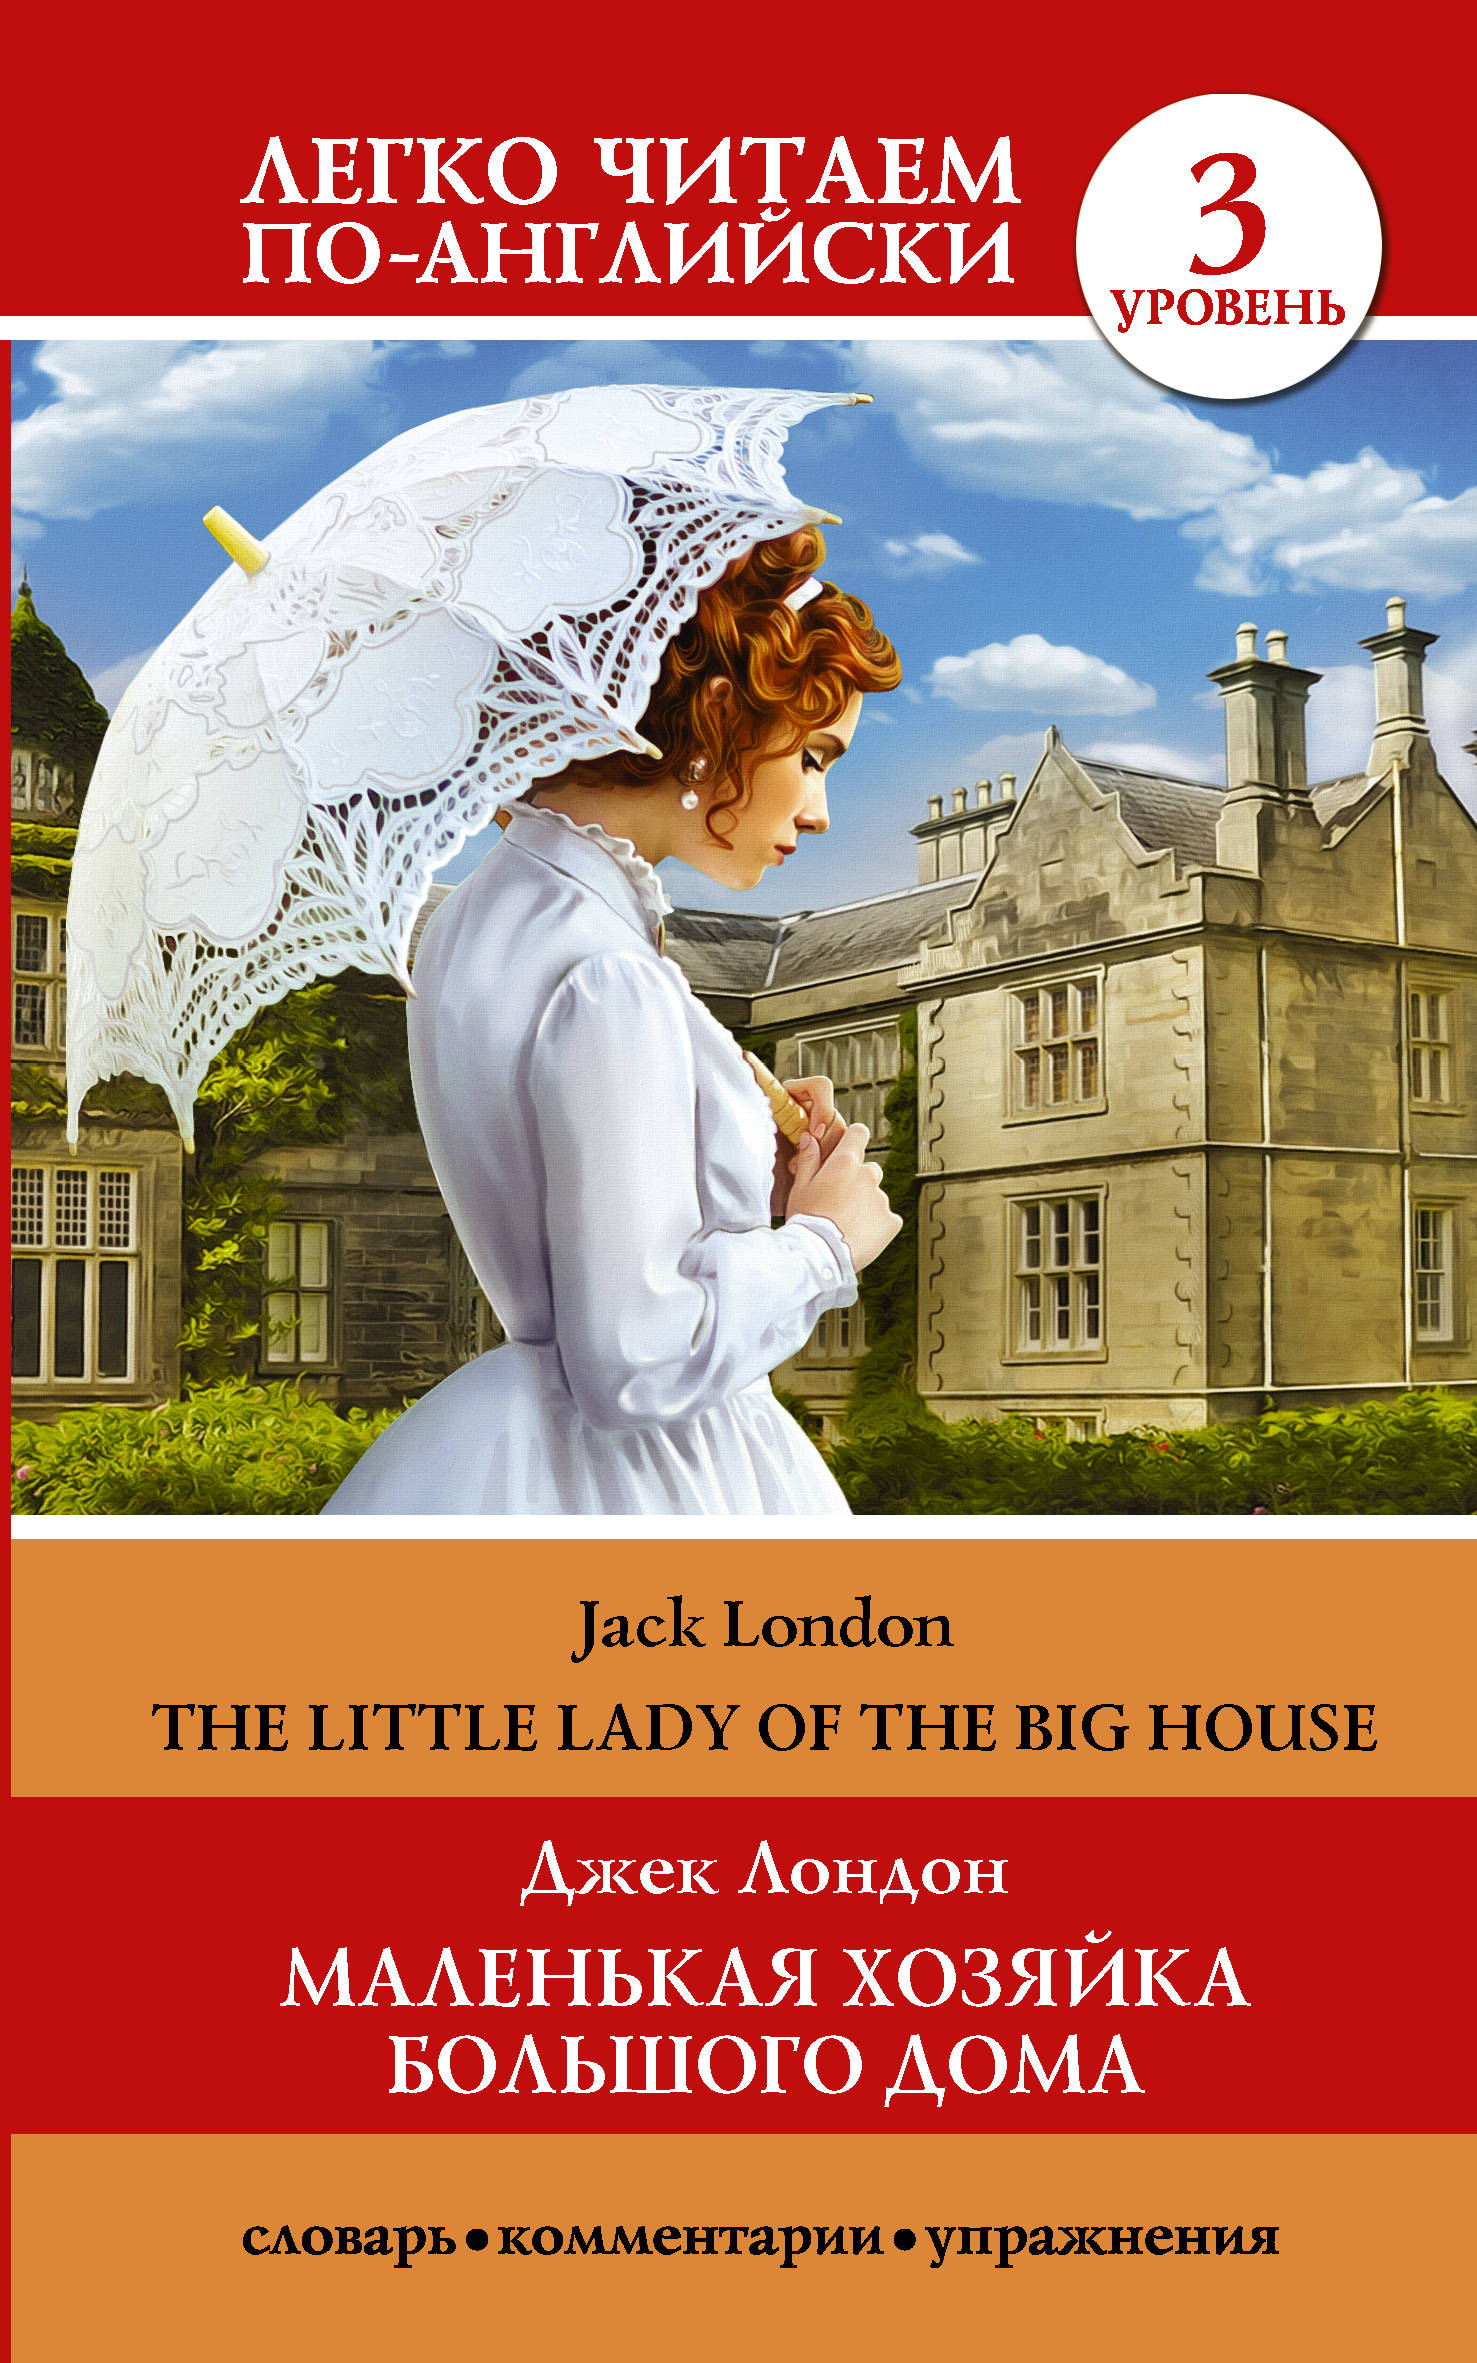 Маленькая хозяйка большого дома. Уровень 3 / The Little Lady of the Big House: Level 3. Джек Лондон